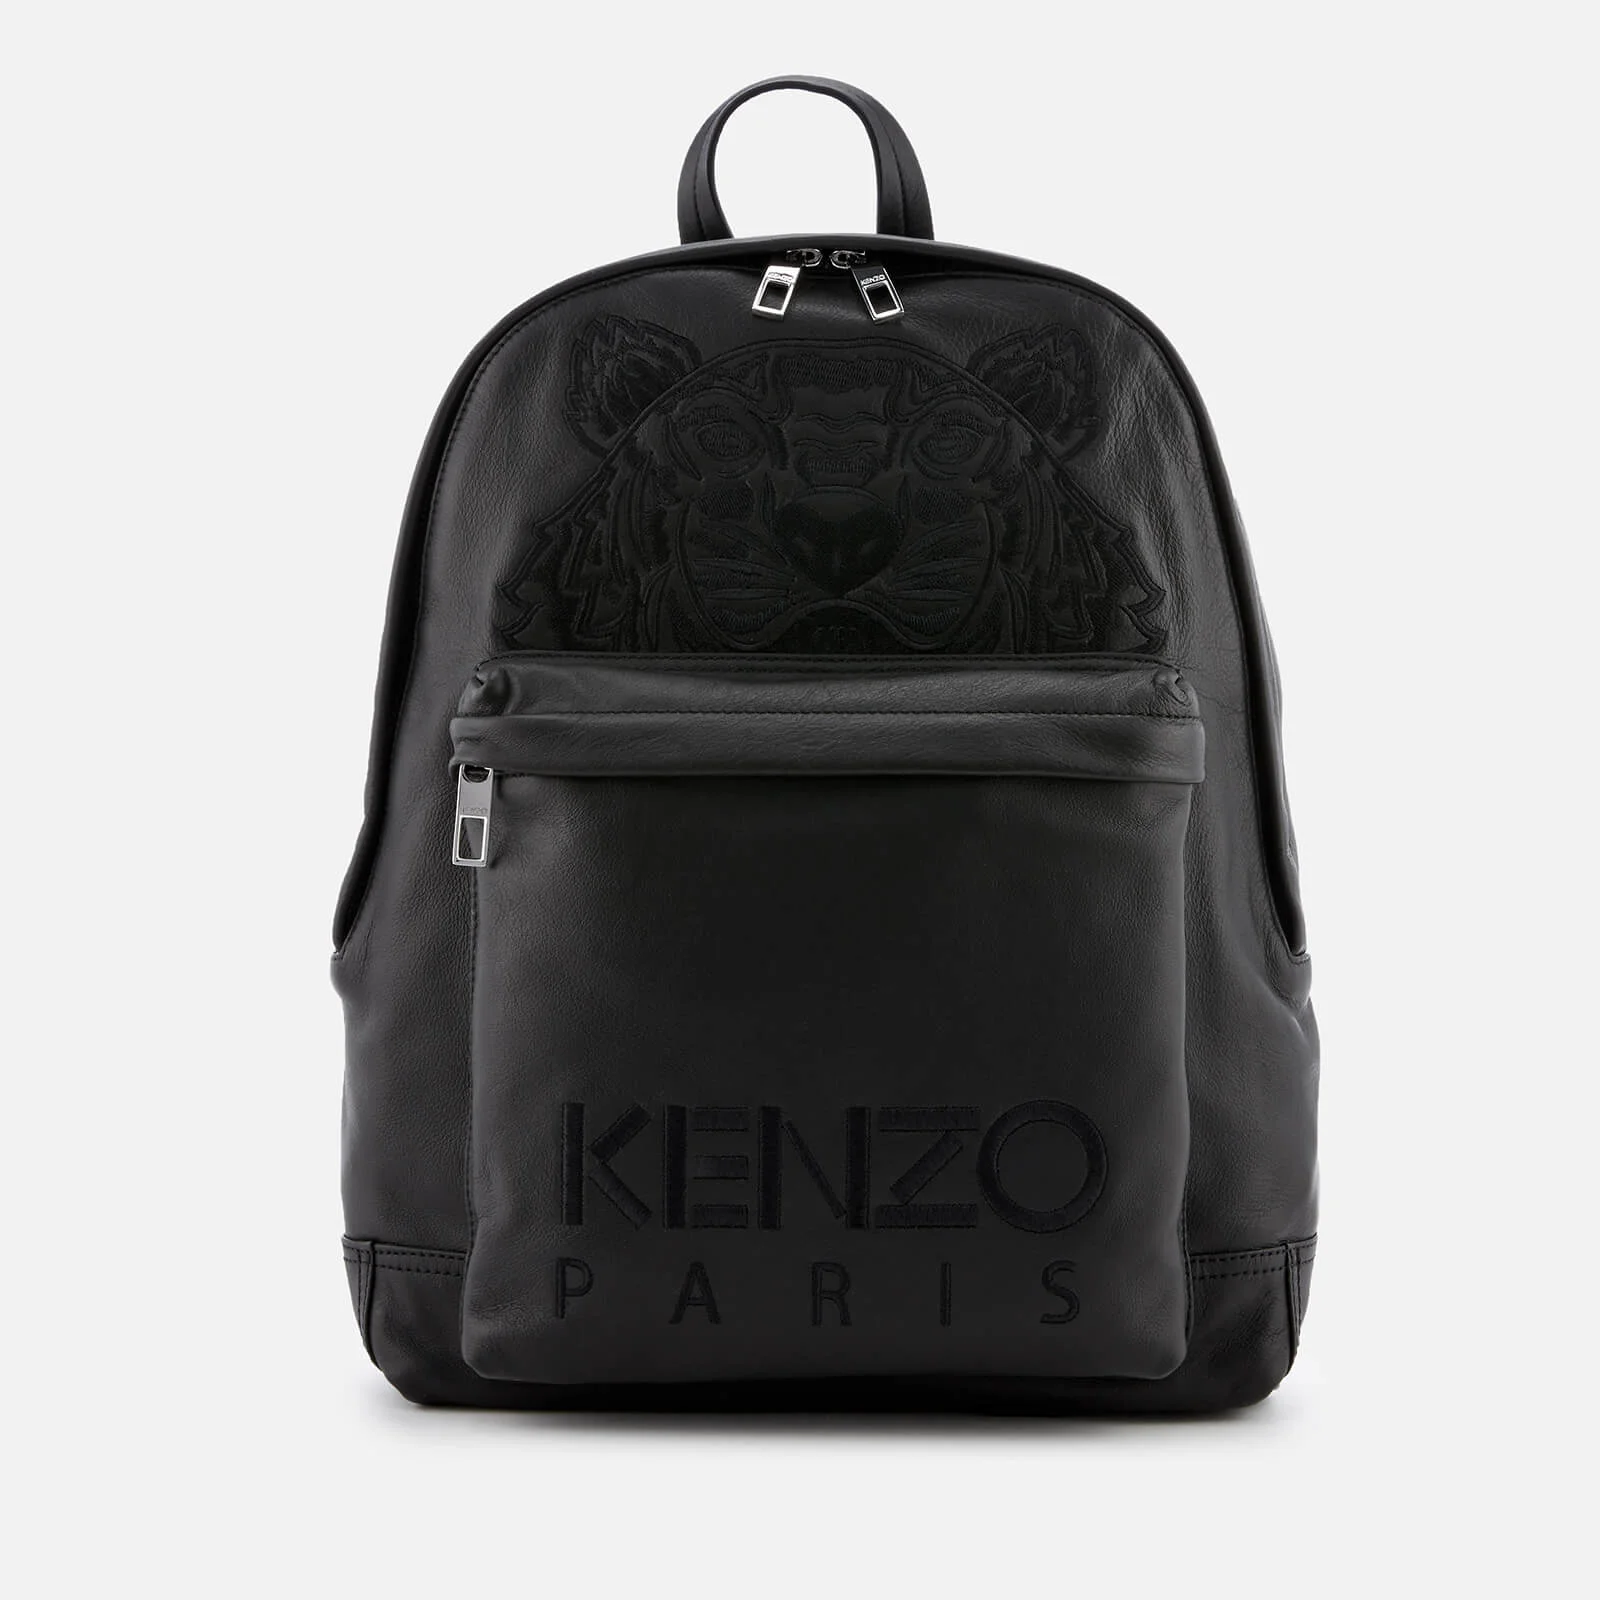 KENZO Men's Calfskin Tiger Backpack - Black Image 1